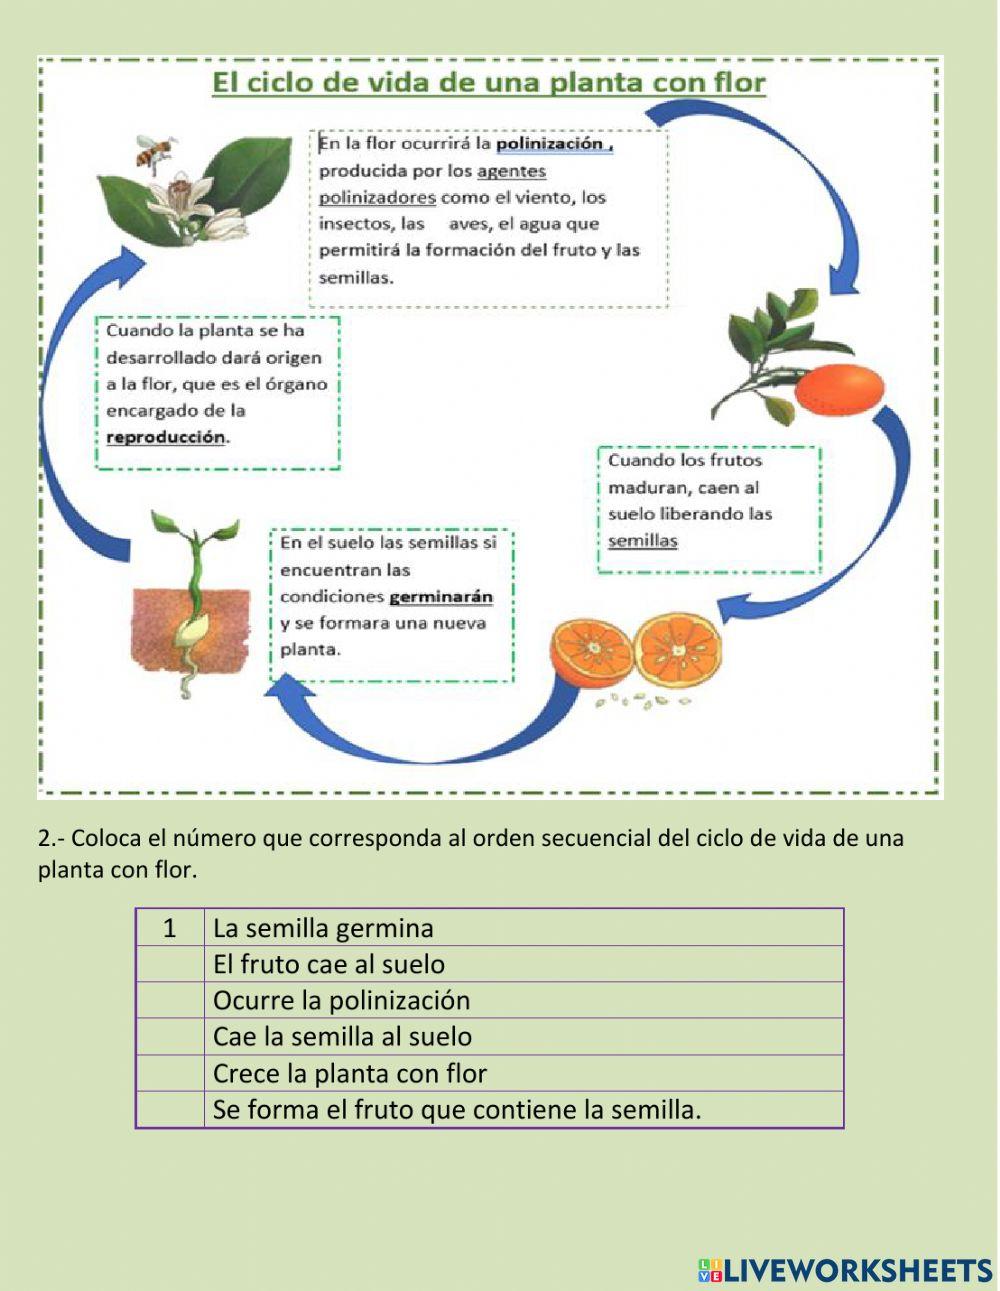 El ciclo de vida de una planta 2